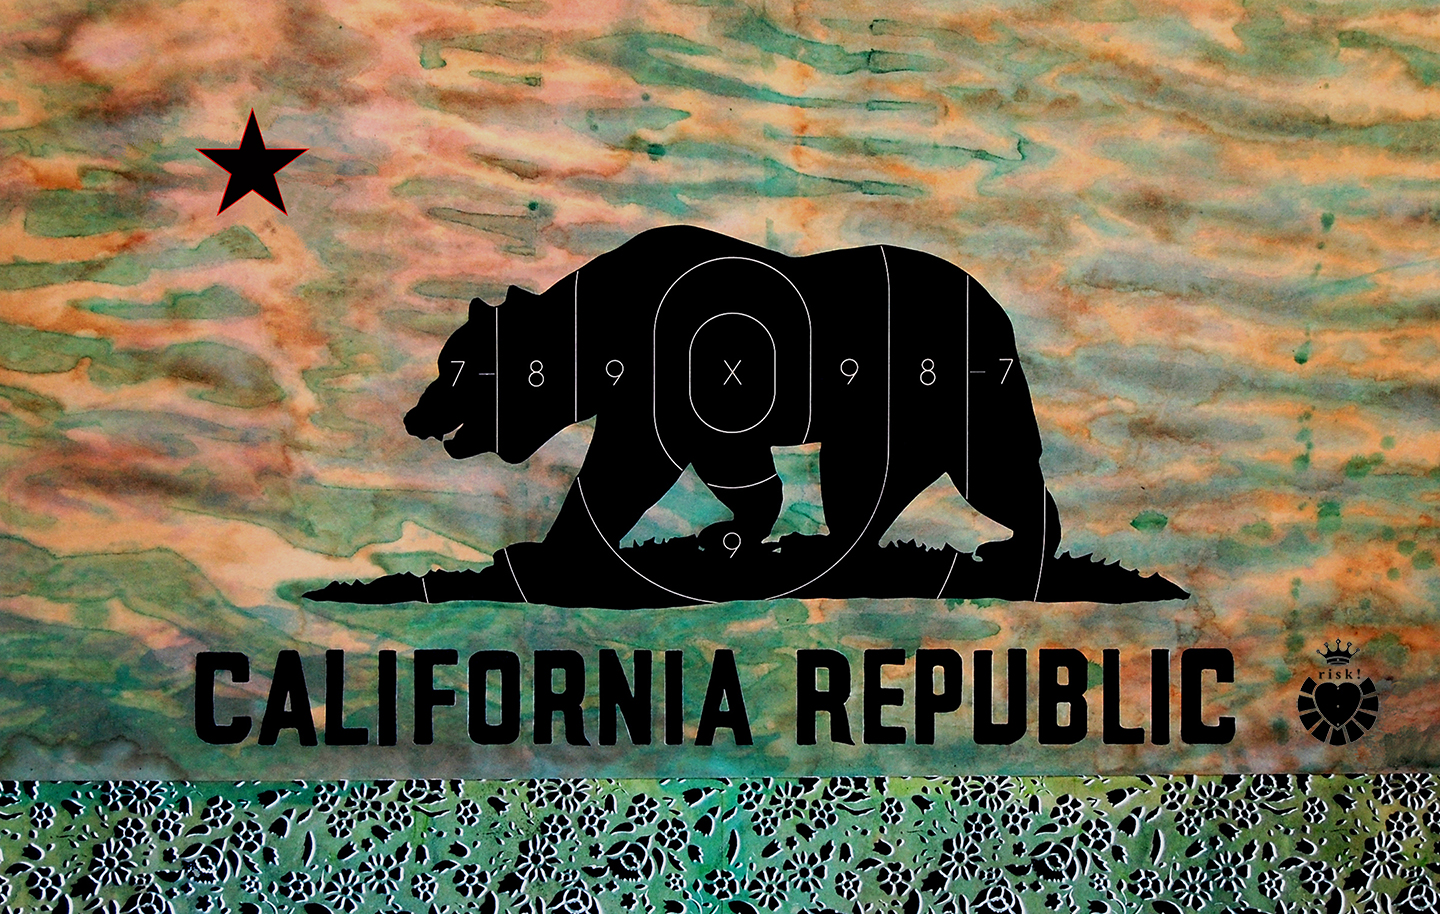 California Republic / 24 x 36 / Original Sold